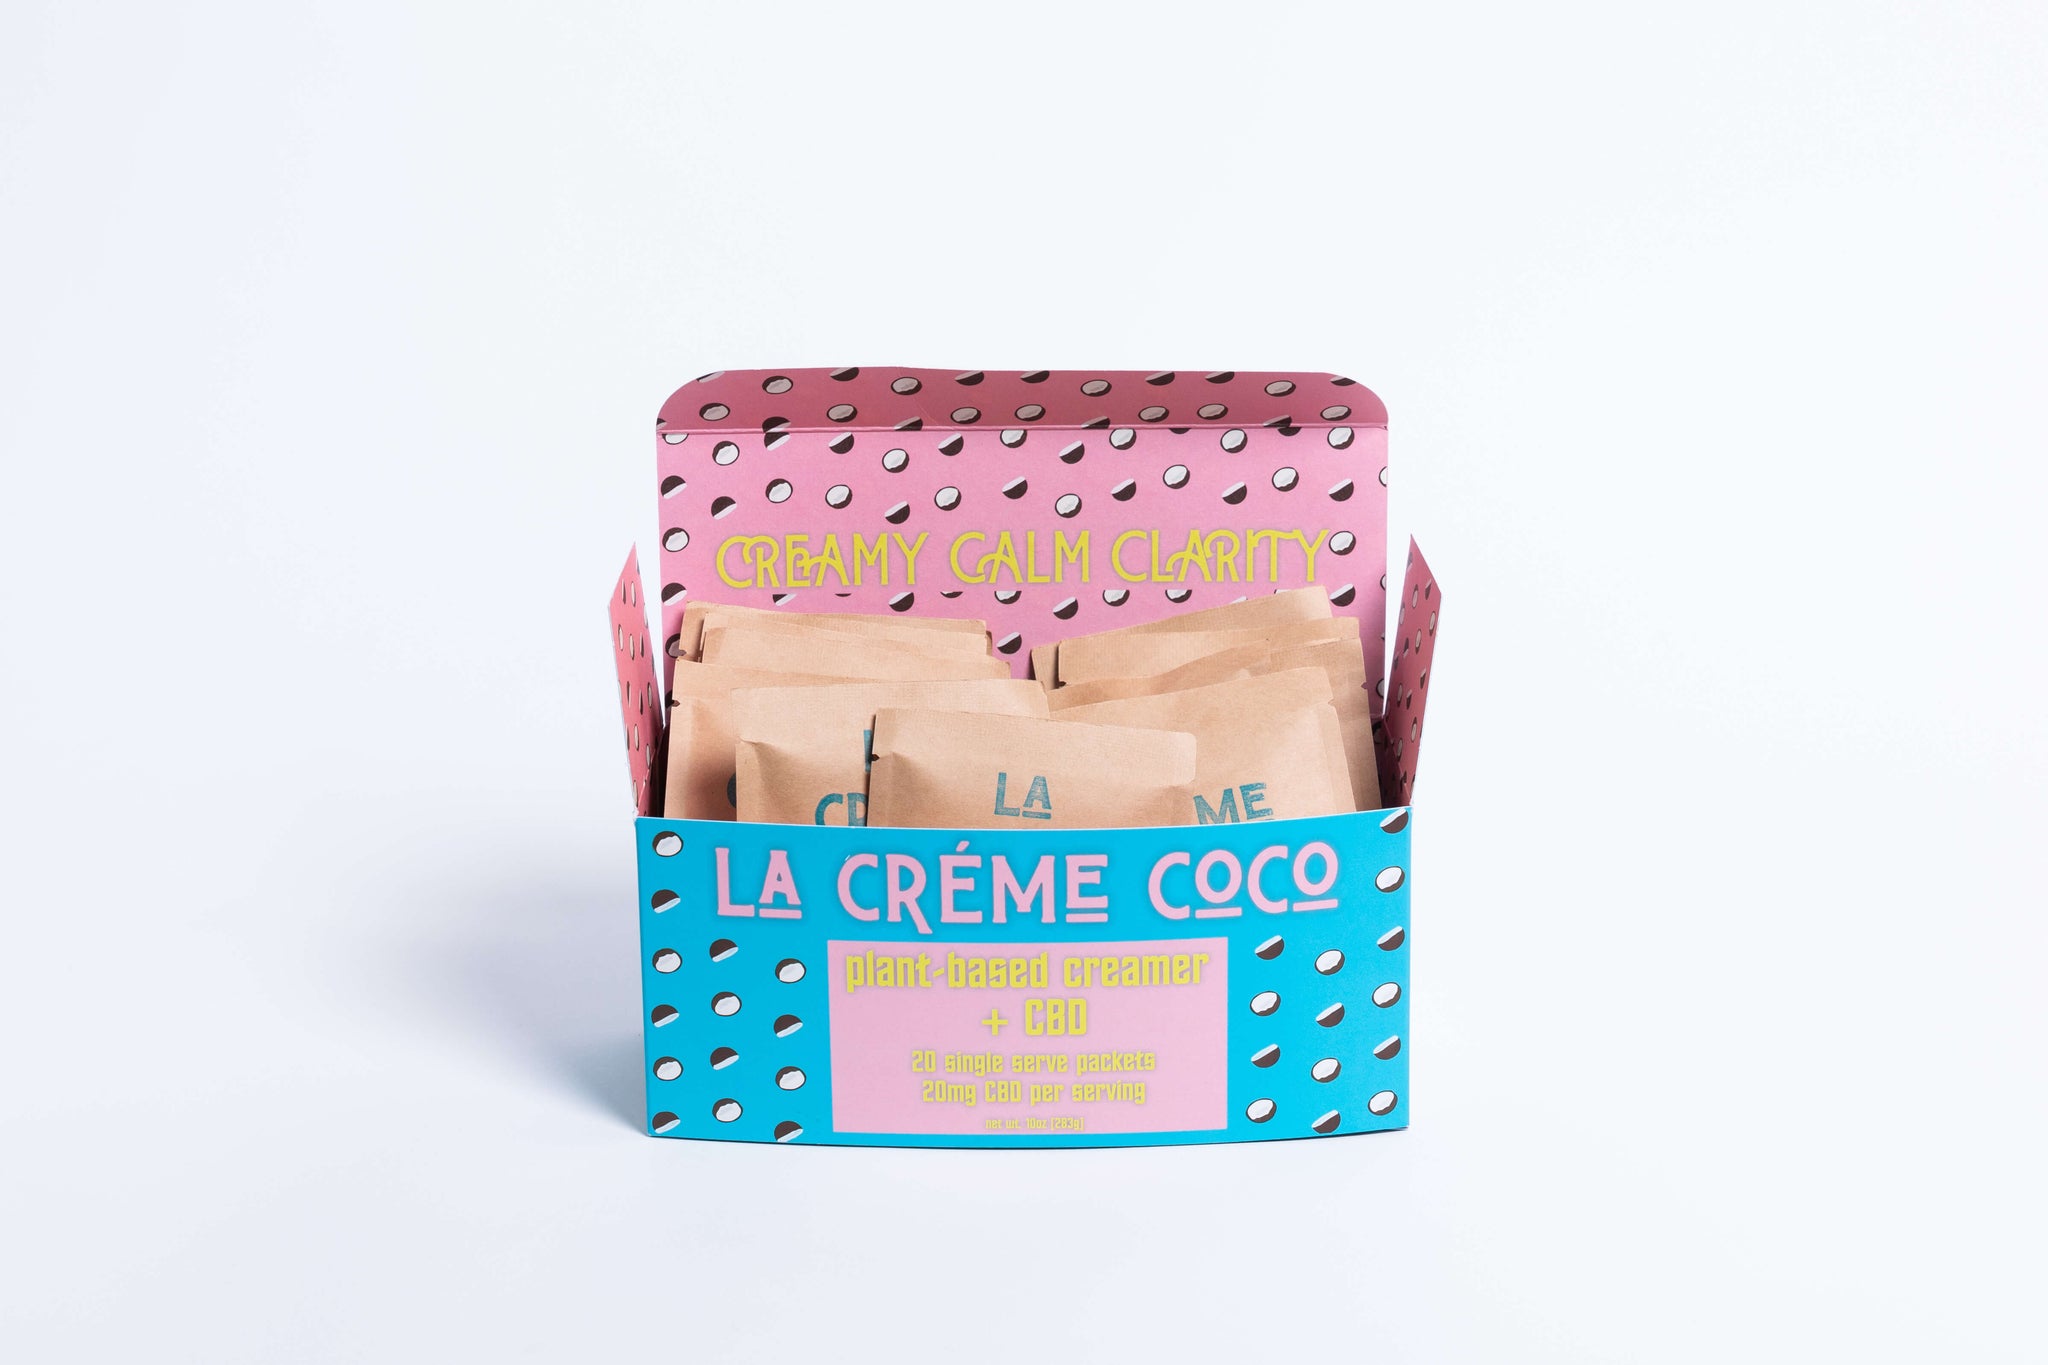 La Crème Coco + Hemp Extract